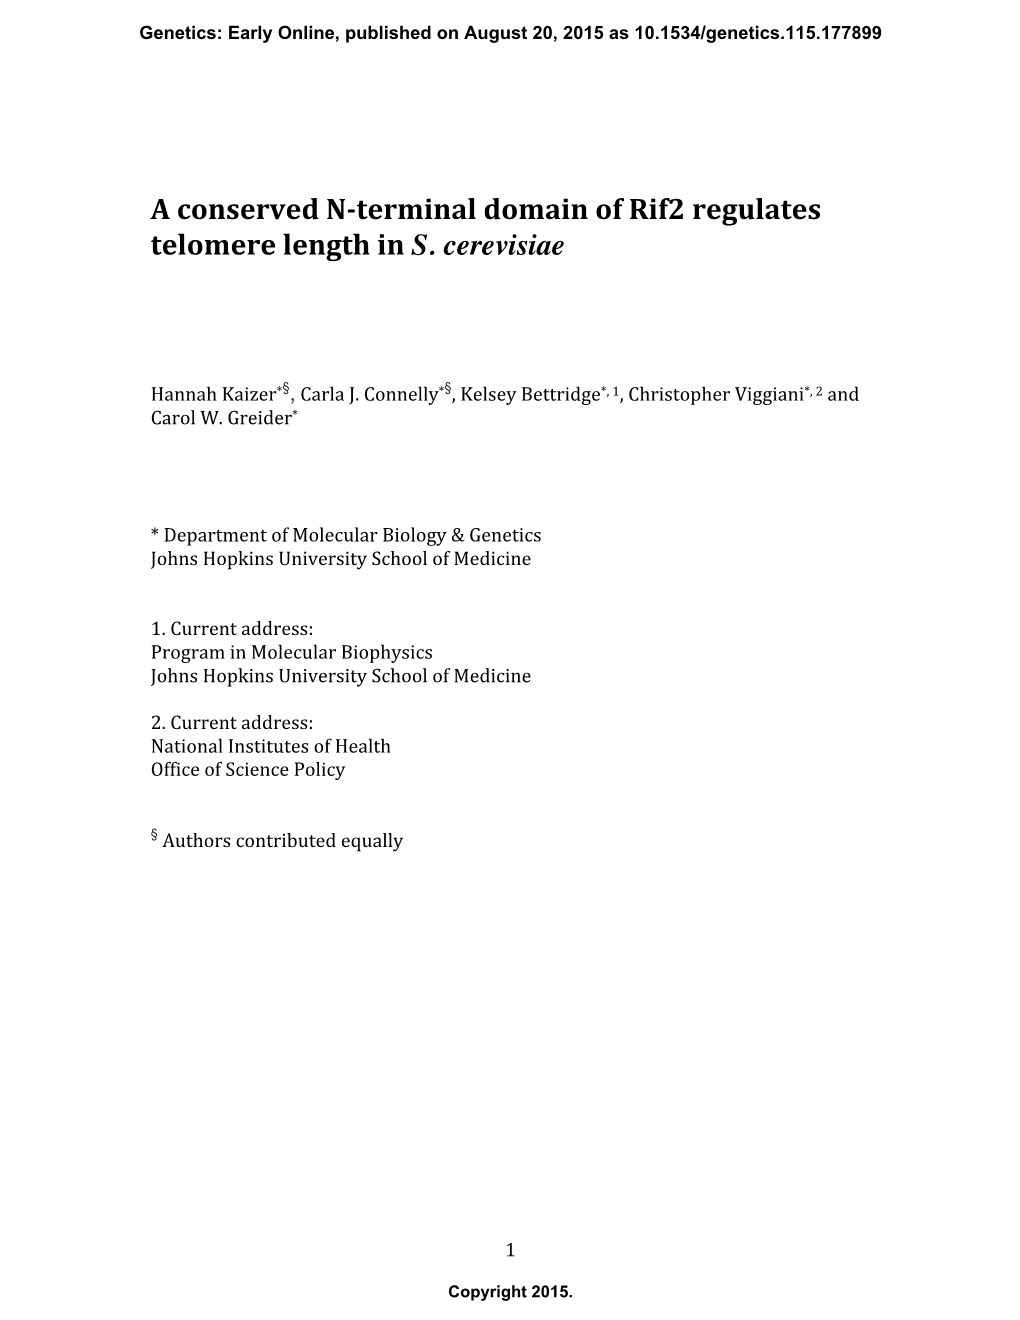 Terminal Domain of Rif2 Regulates Telomere Length in S